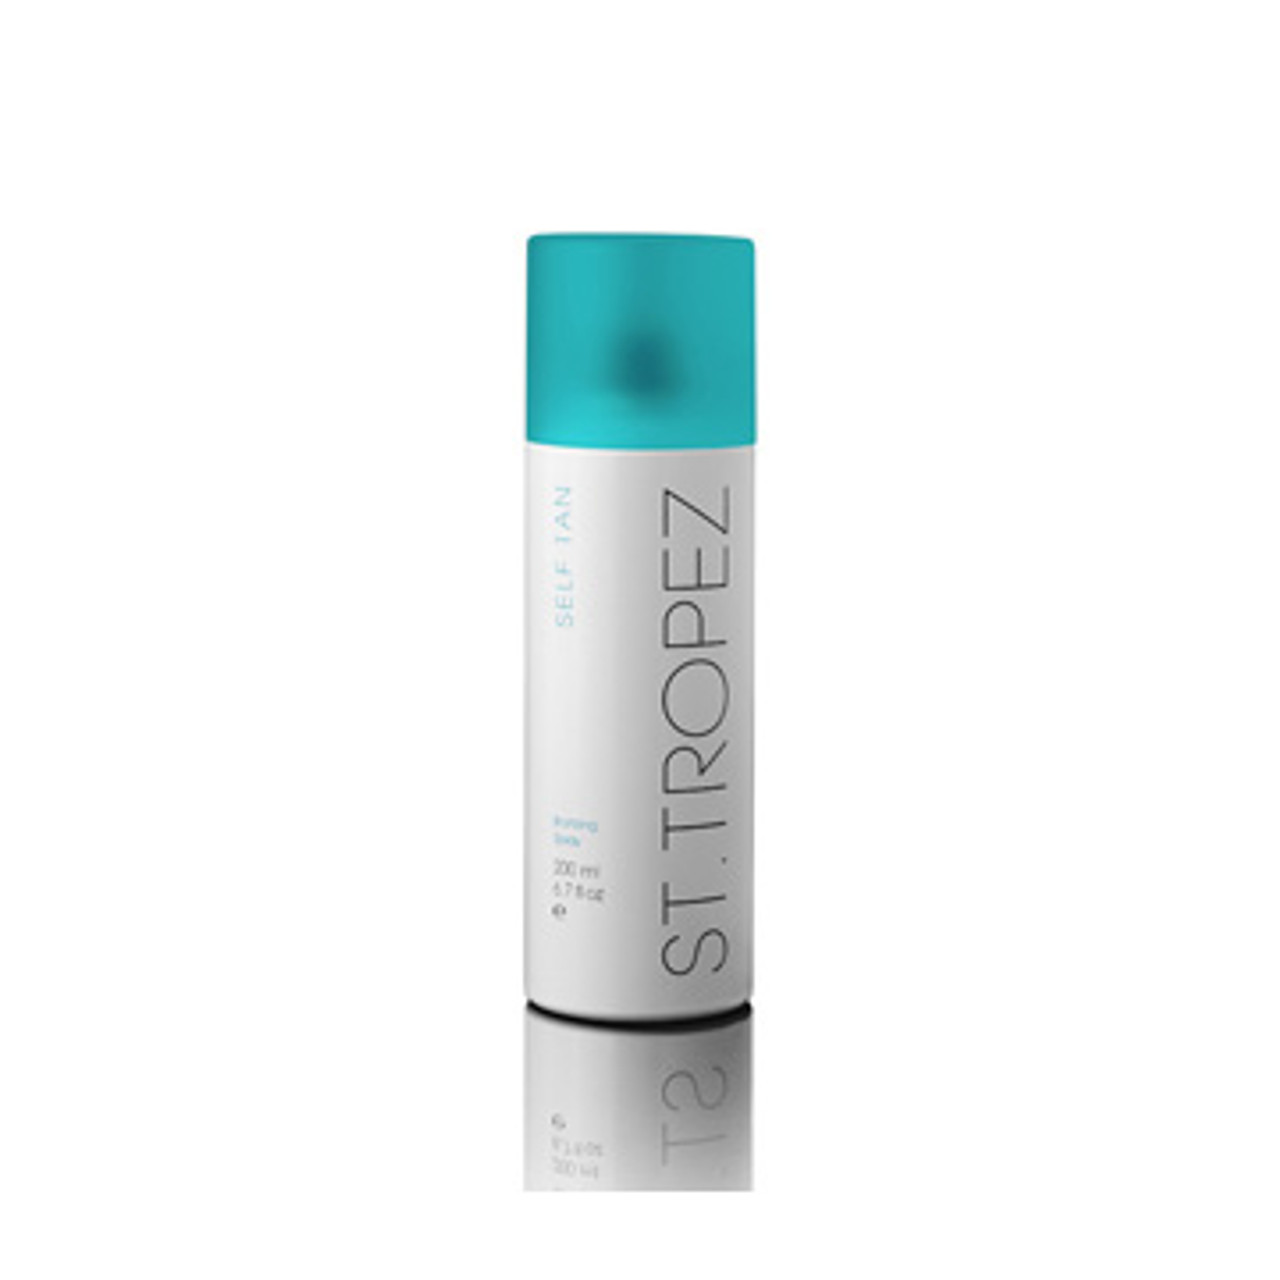 St. Tropez Self Tan Bronzing Spray - 6.7 oz